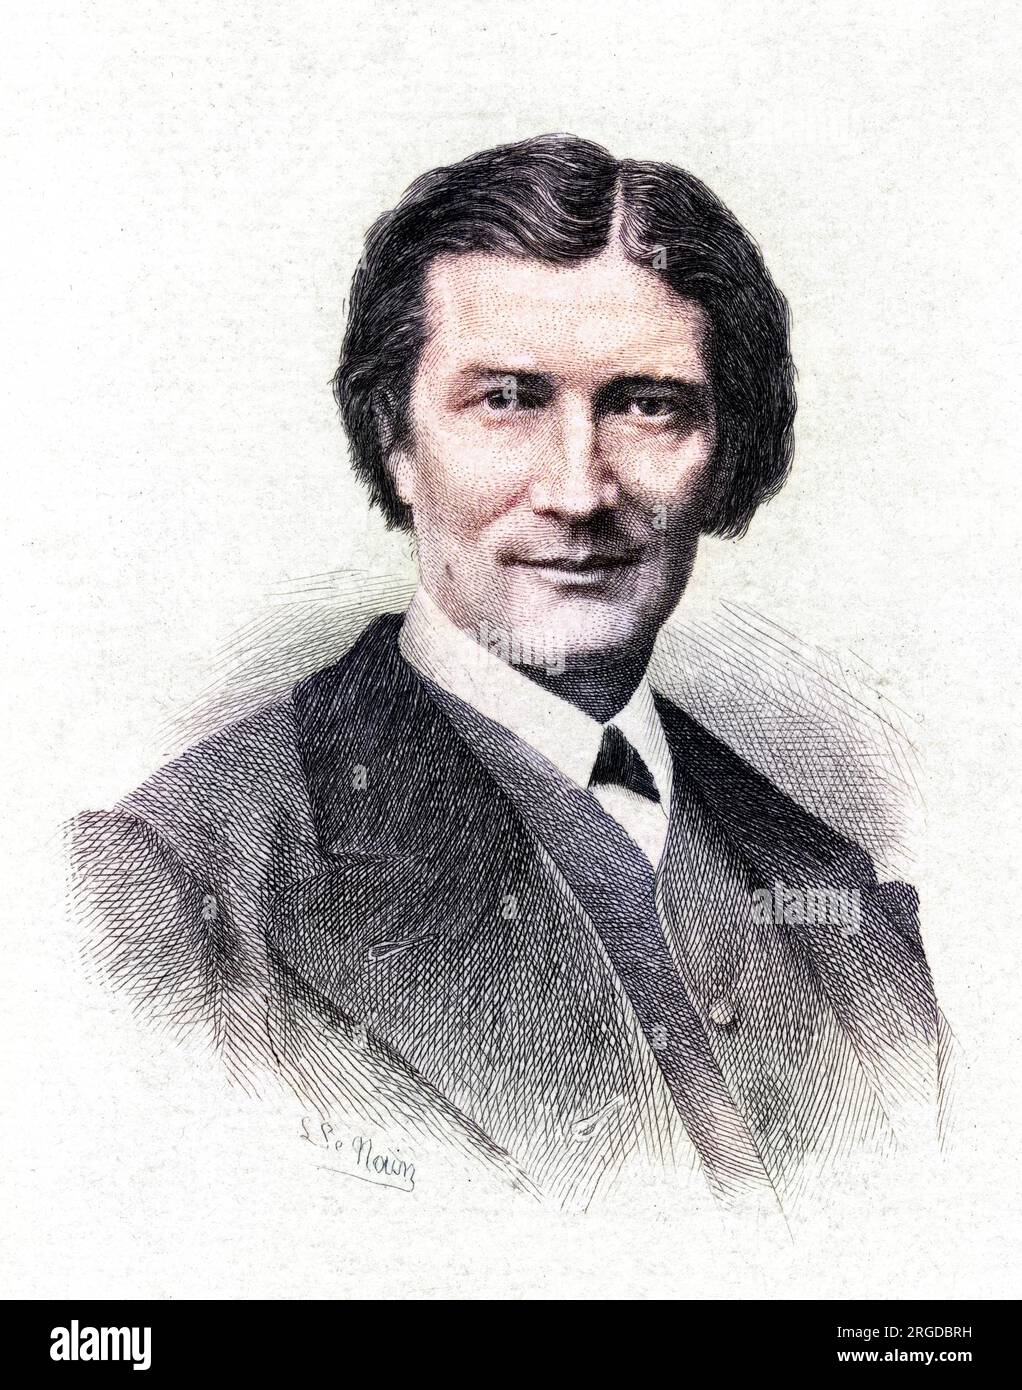 Victorien Sardou (1831 - 1908), French playwright. Stock Photo